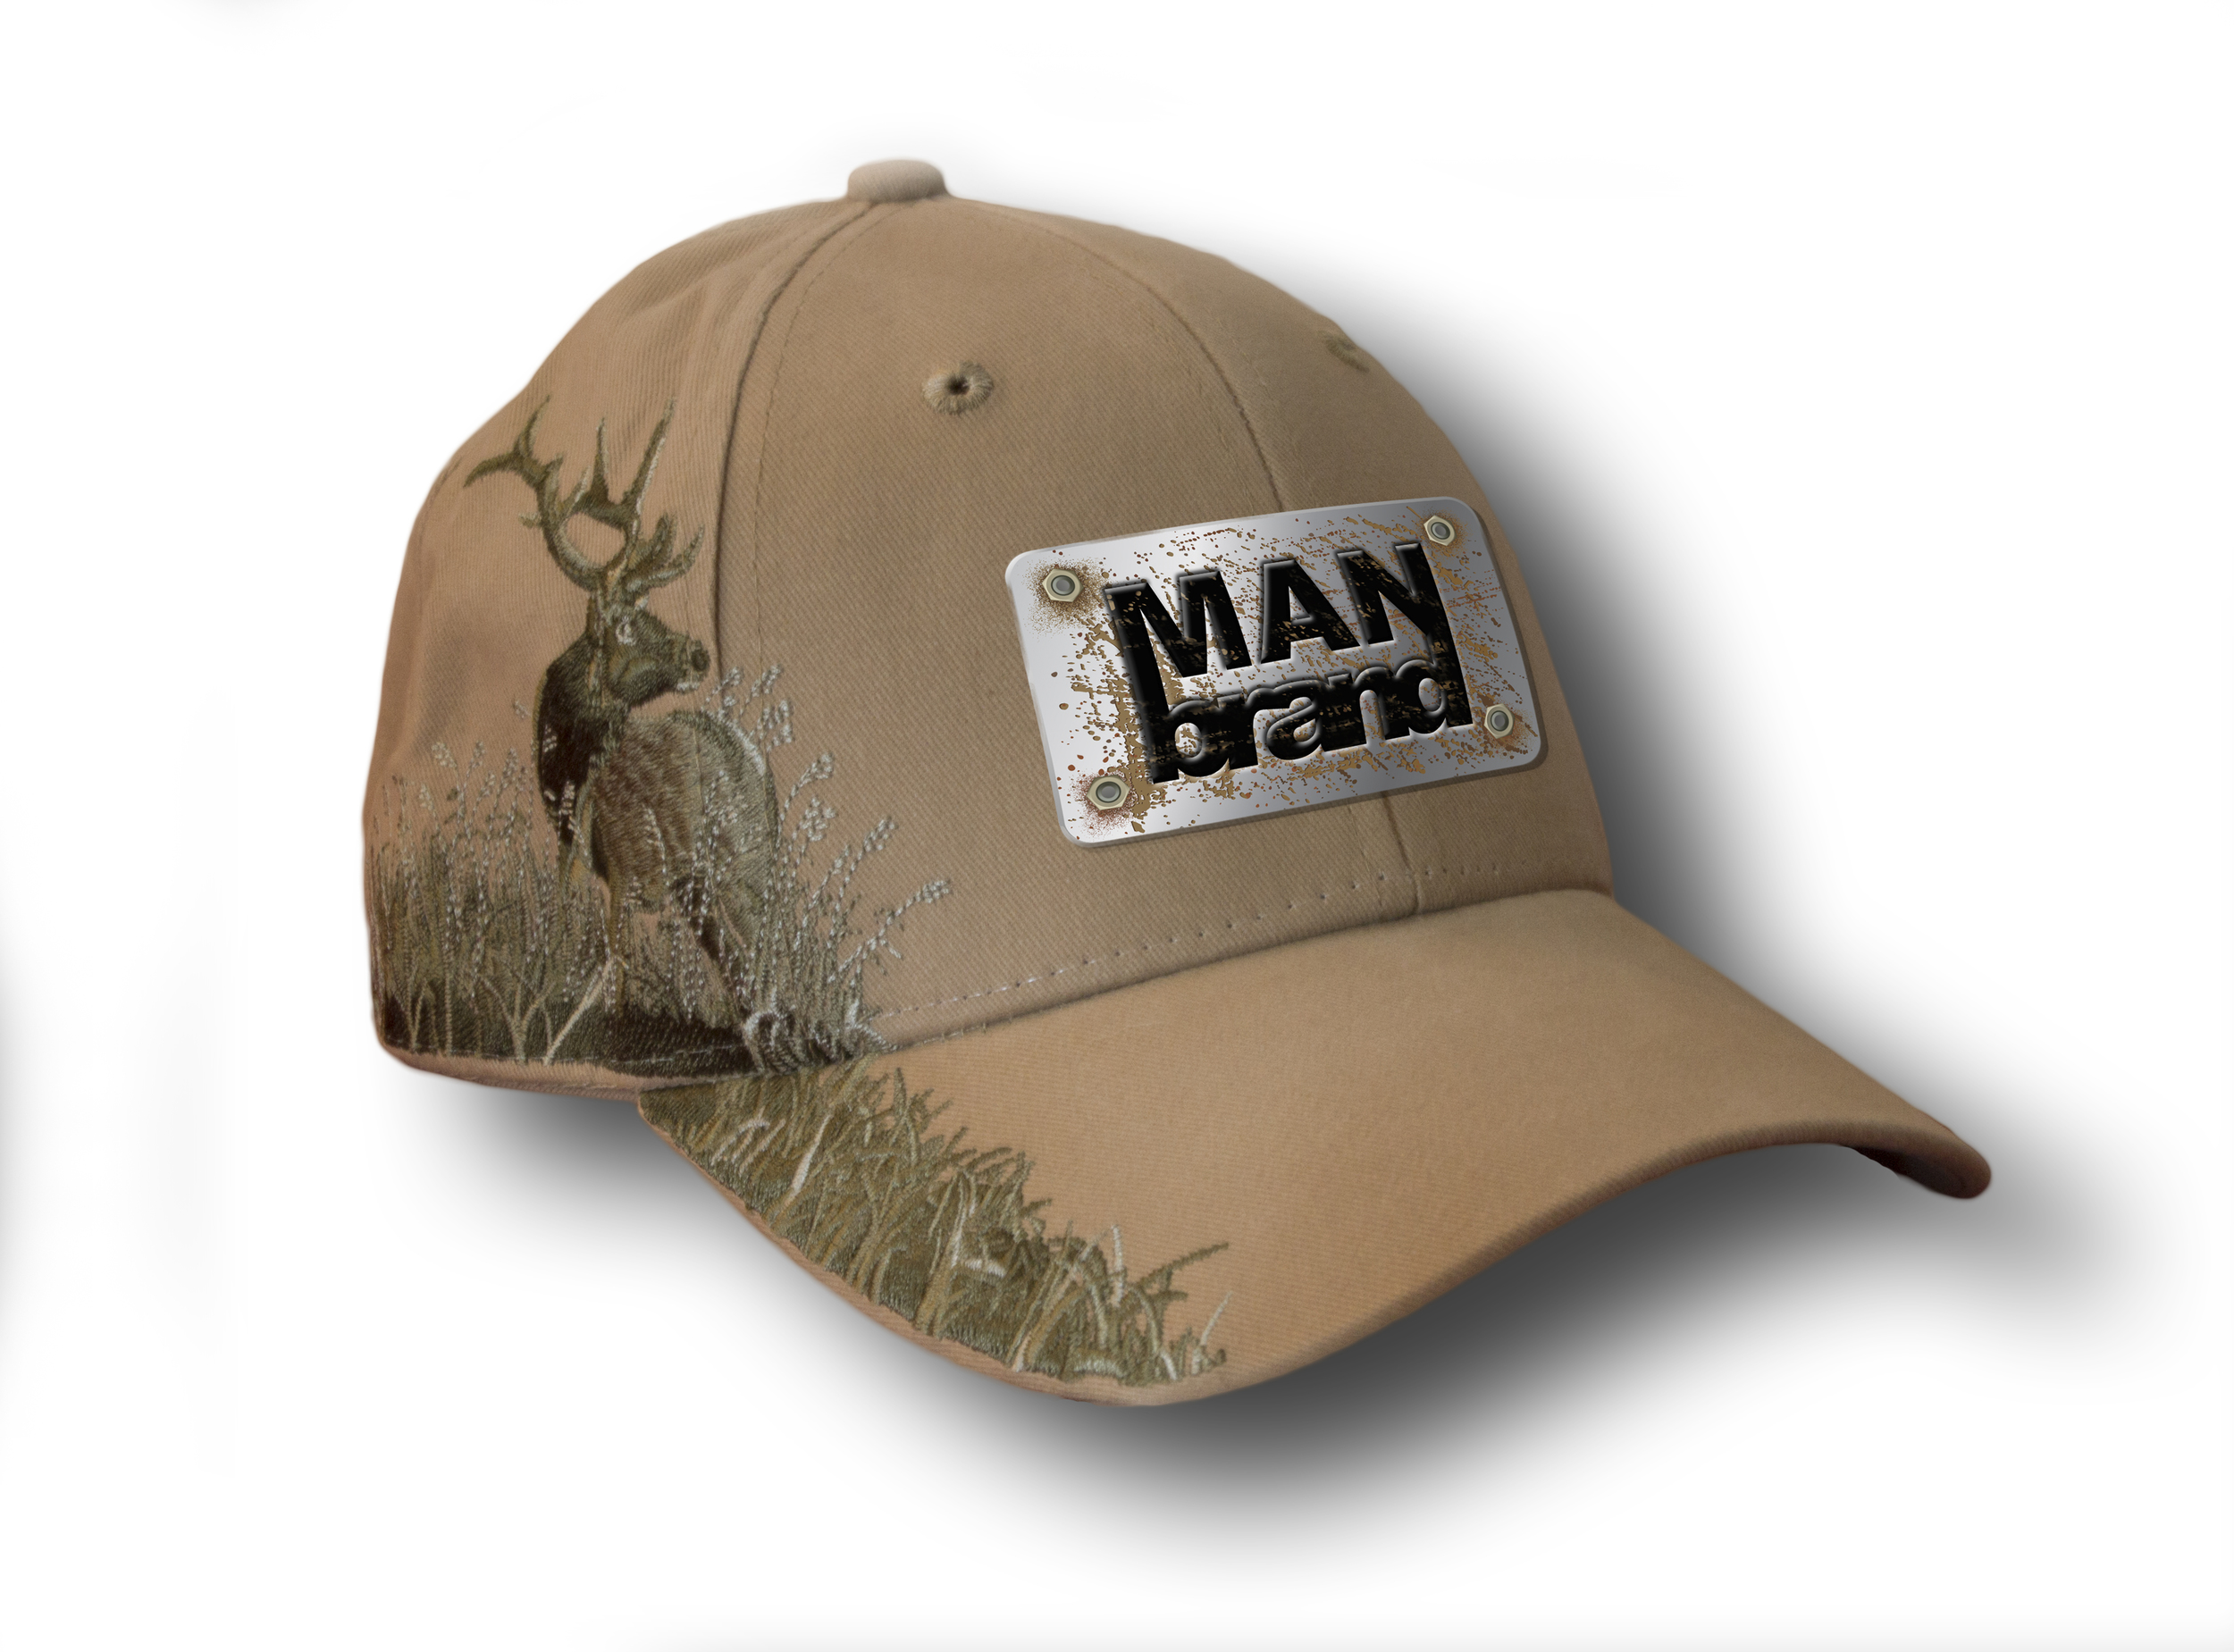 Tan Elk Man Brand Hats.jpg